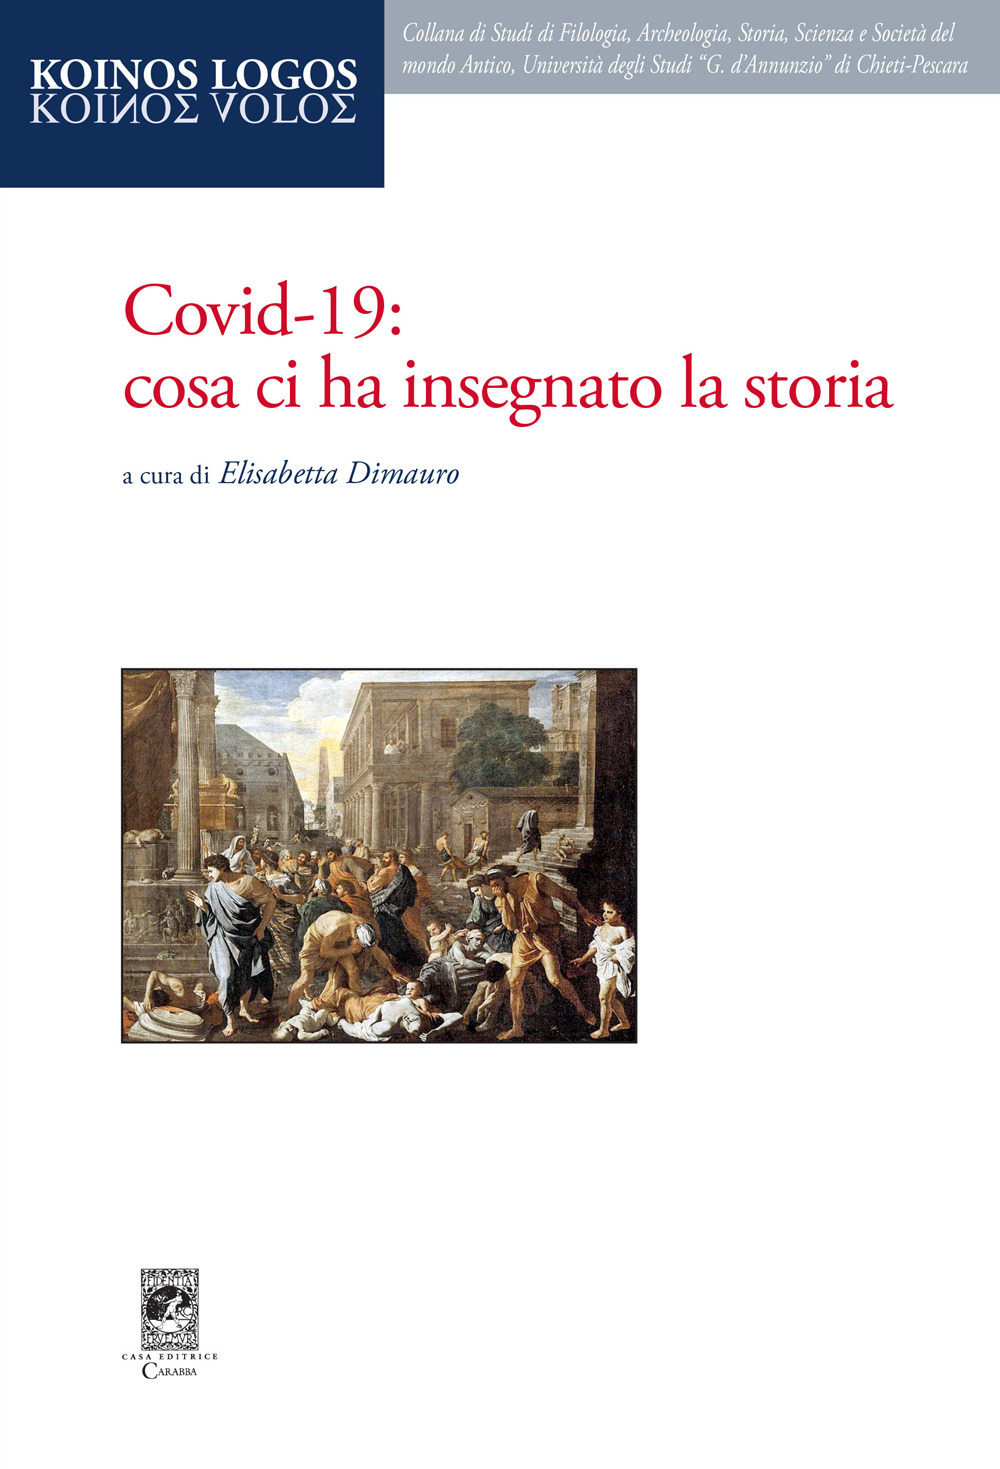 Covid-19: cosa ci ha insegnato la storia